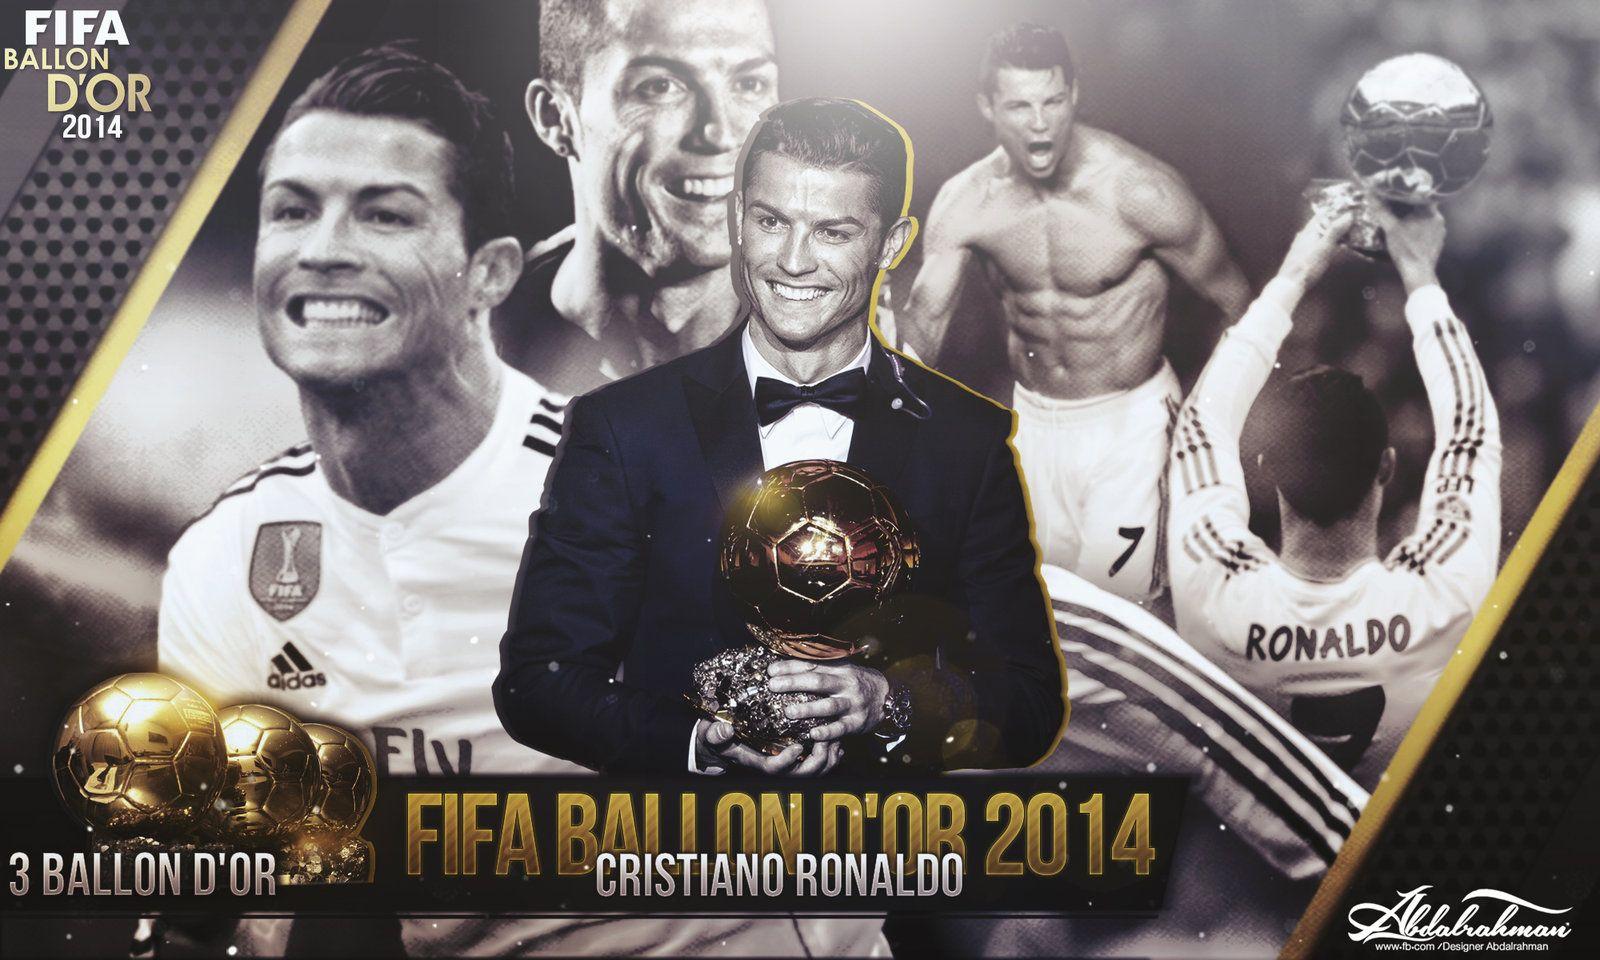 Cristiano Ronaldo FIFA_Ballon D'Or 2014 By Designer Abdalrahman